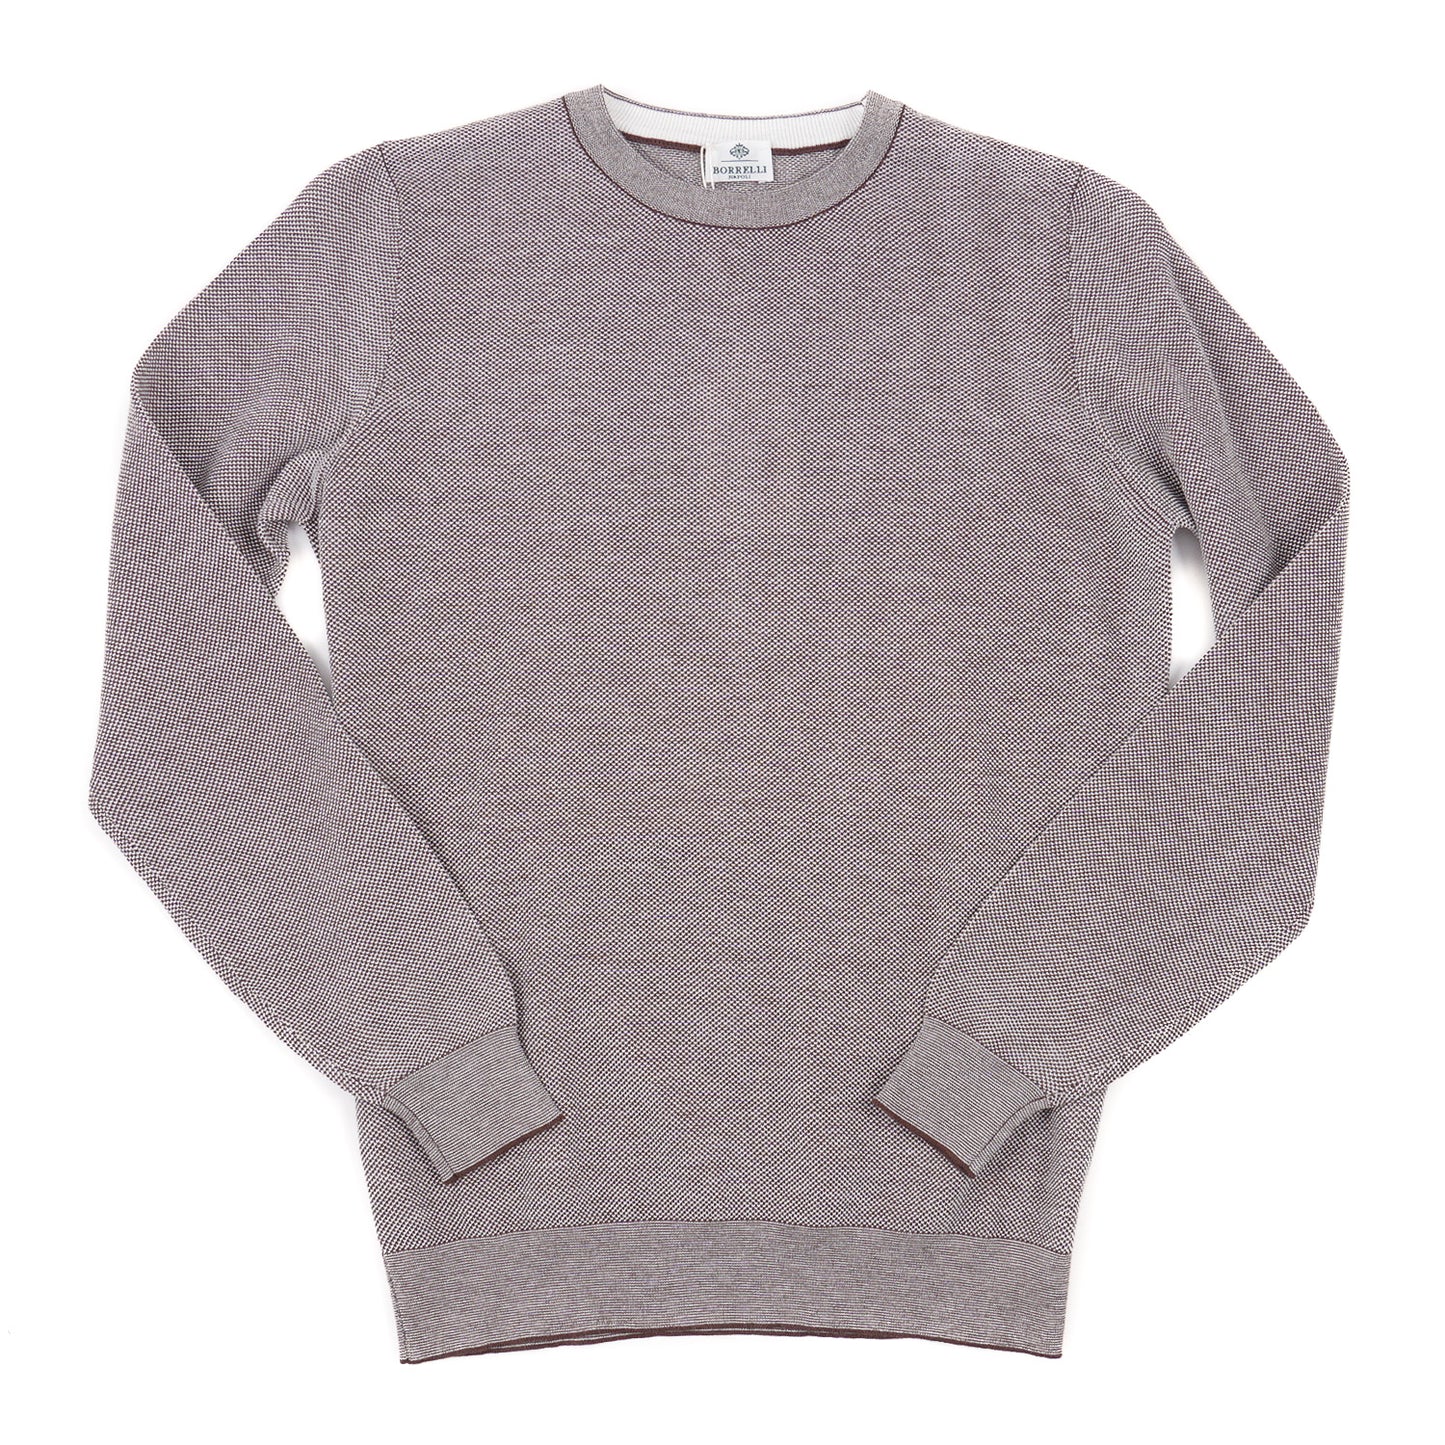 Luigi Borrelli Pique Knit Cotton Sweater - Top Shelf Apparel